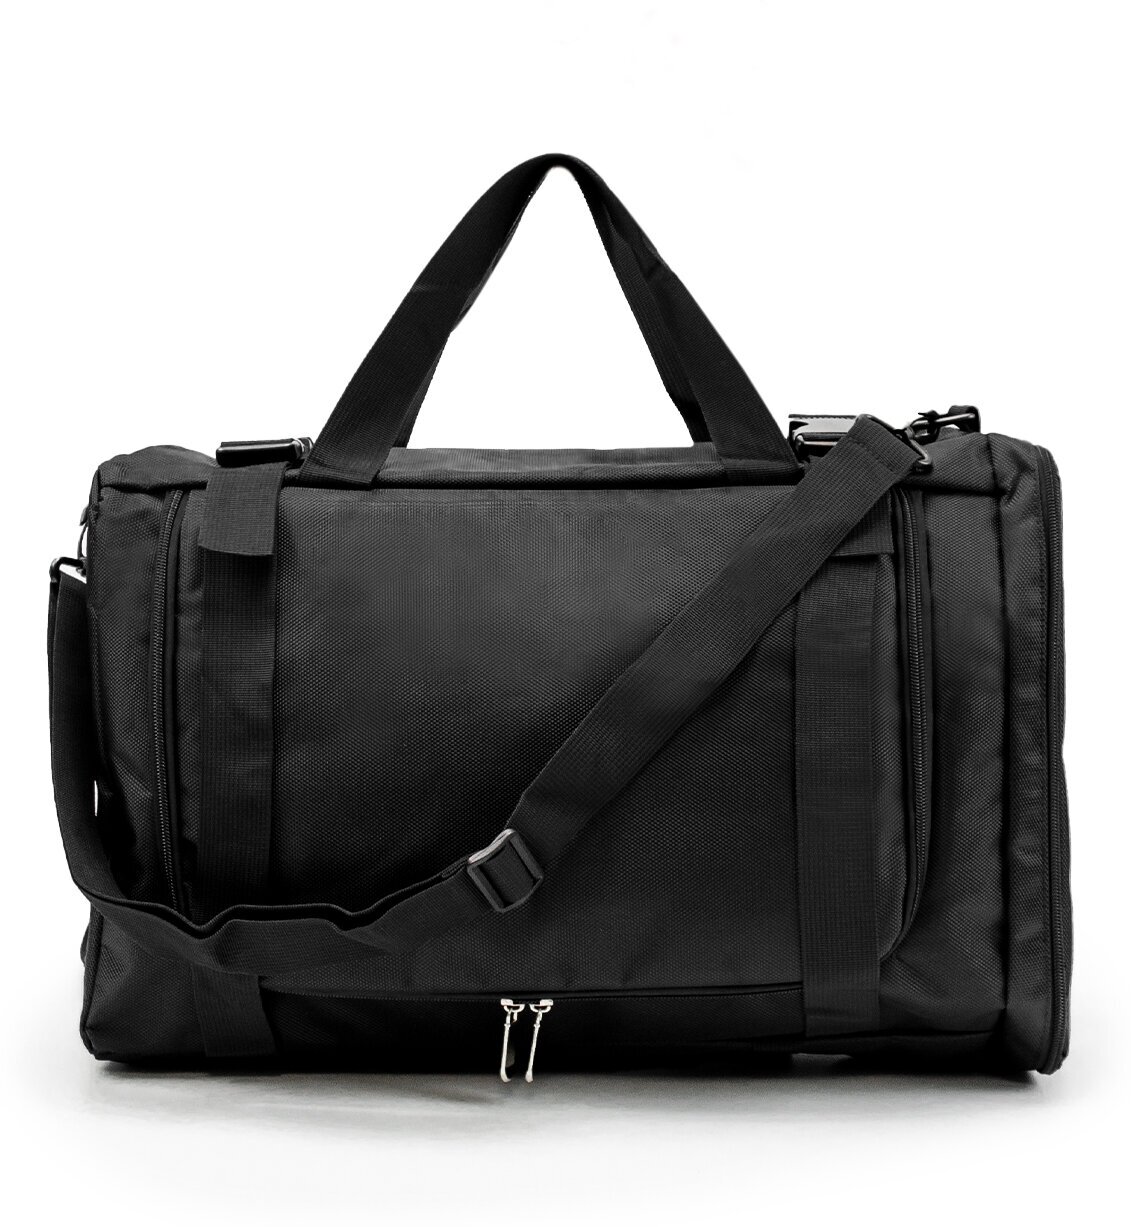 Рюкзак-спортивная сумка (22,5 л, черная) UrbanStorm трансформер большой размер для фитнеса, отдыха \ школьный для мальчиков, девочек - фотография № 9